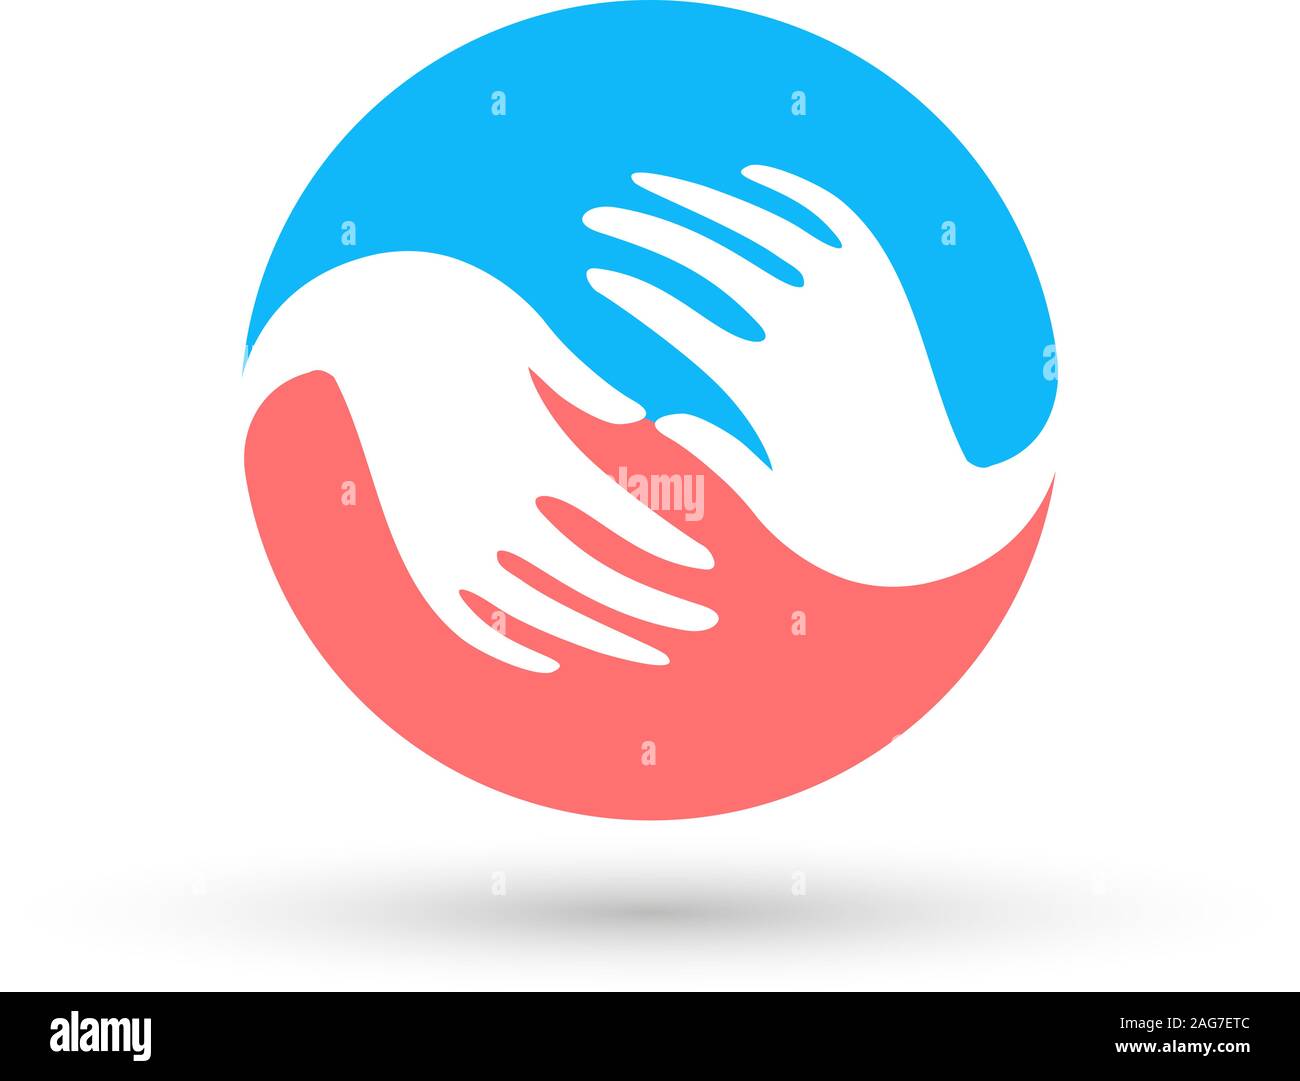 Isolierte Blau und Rosa runde Vektor Logo. Globale Kommunikation. hilfsbereite Menschen. weiße Hände. Barmherzigkeit unterzeichnen. Flüchtlingslager Emblem. Um die Welt. Blue Earth Stock Vektor